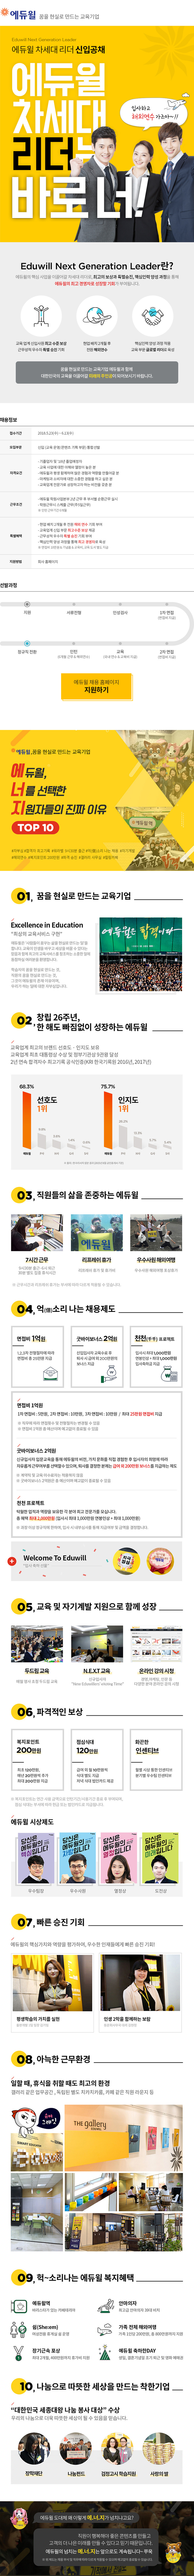 2018 에듀윌 차세대 리더 신입공채